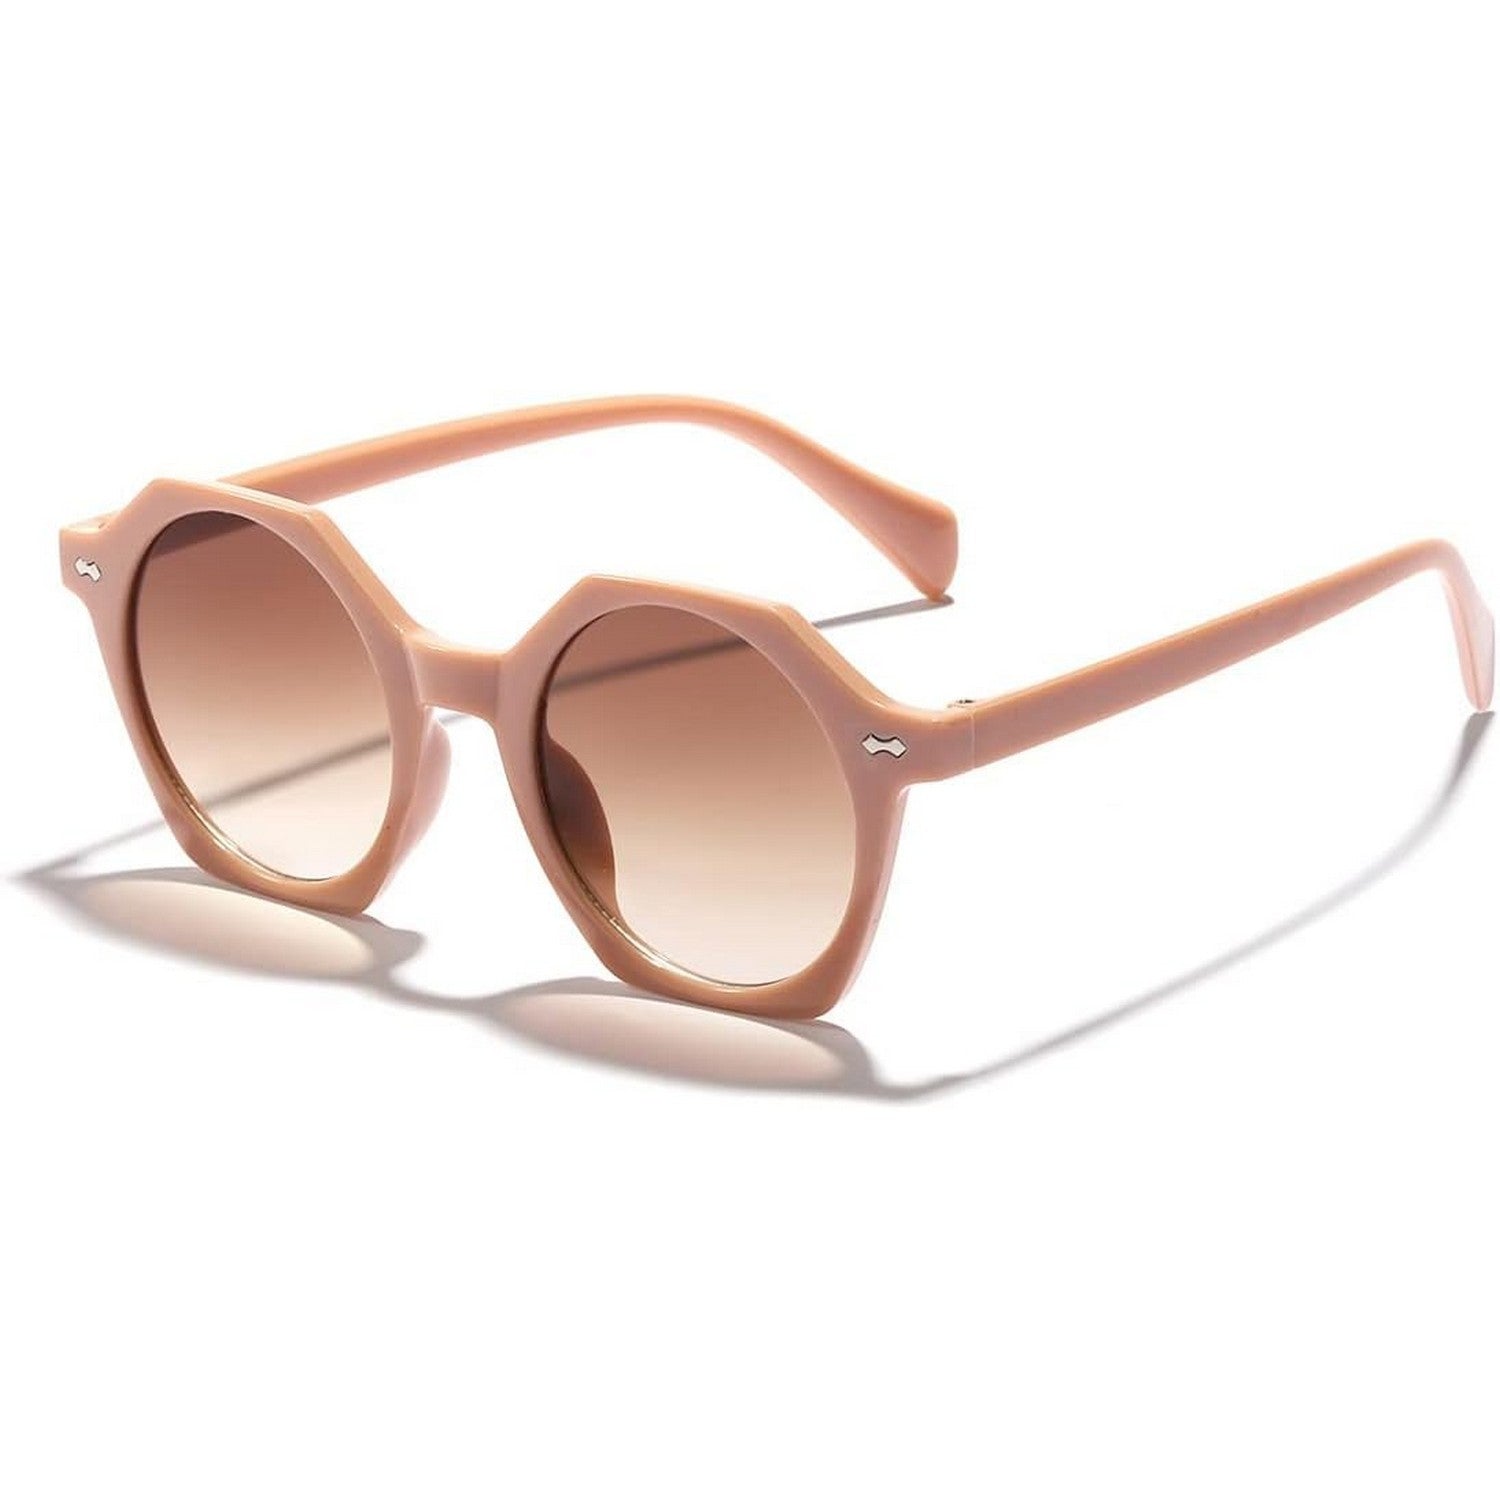 LunaShade Round Hexa Sunglasses for Men and Women Beach Glasses